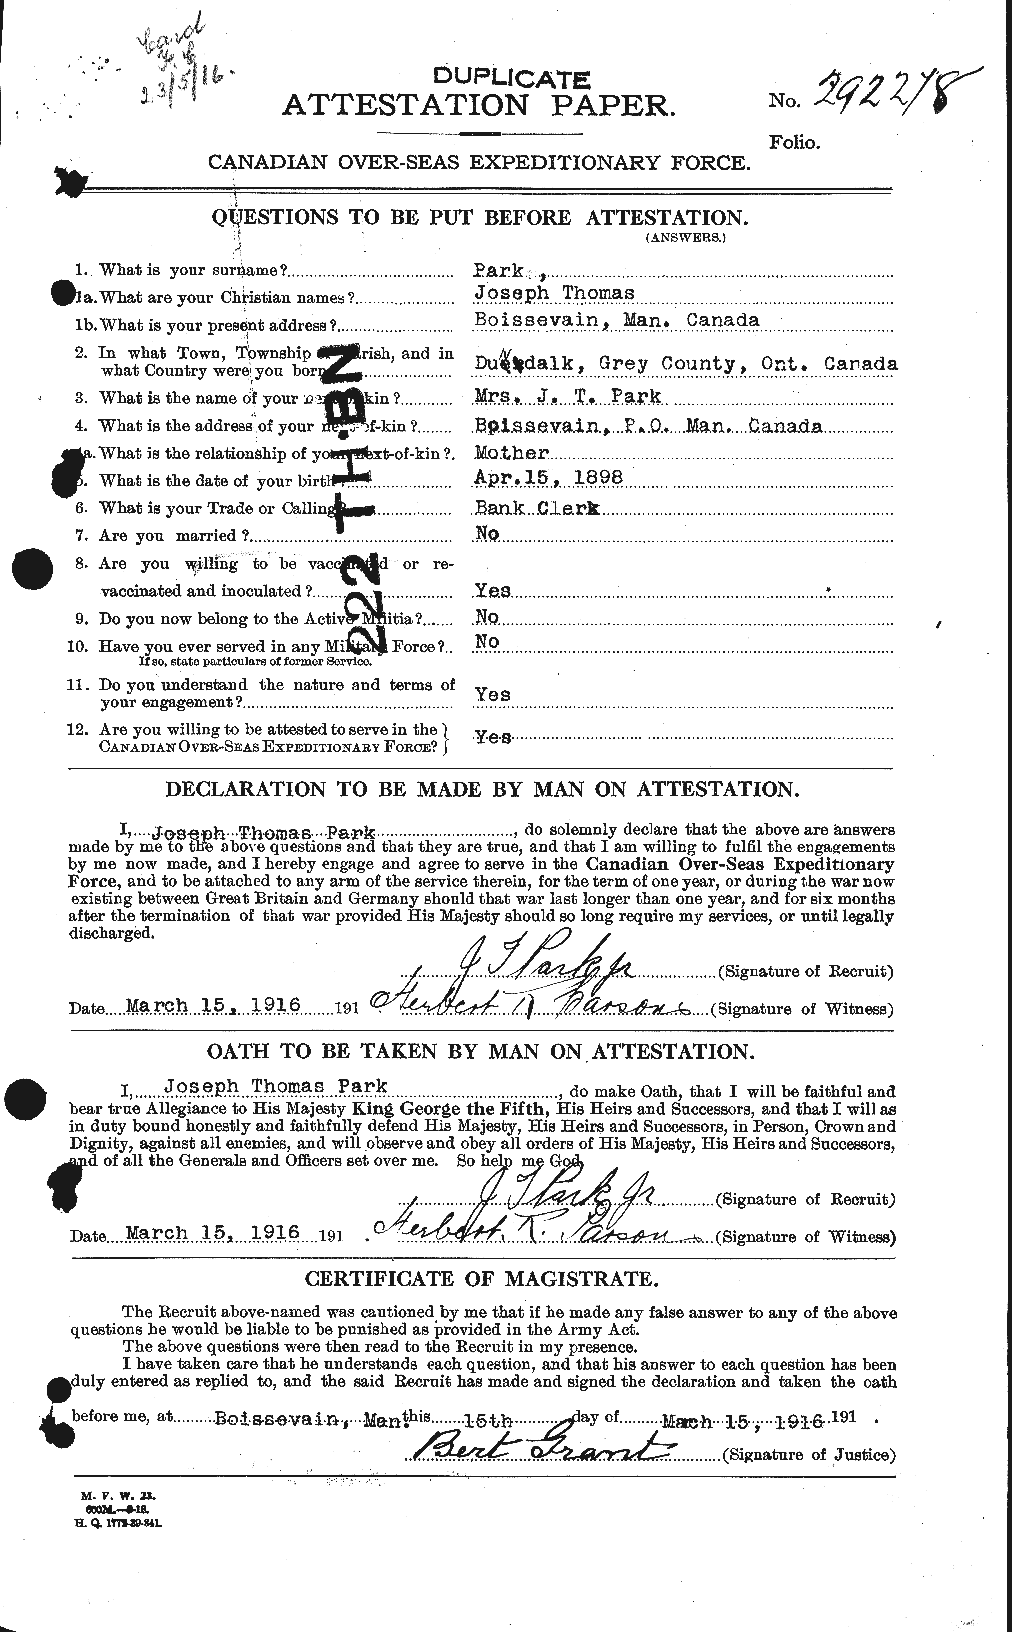 Dossiers du Personnel de la Première Guerre mondiale - CEC 564843a